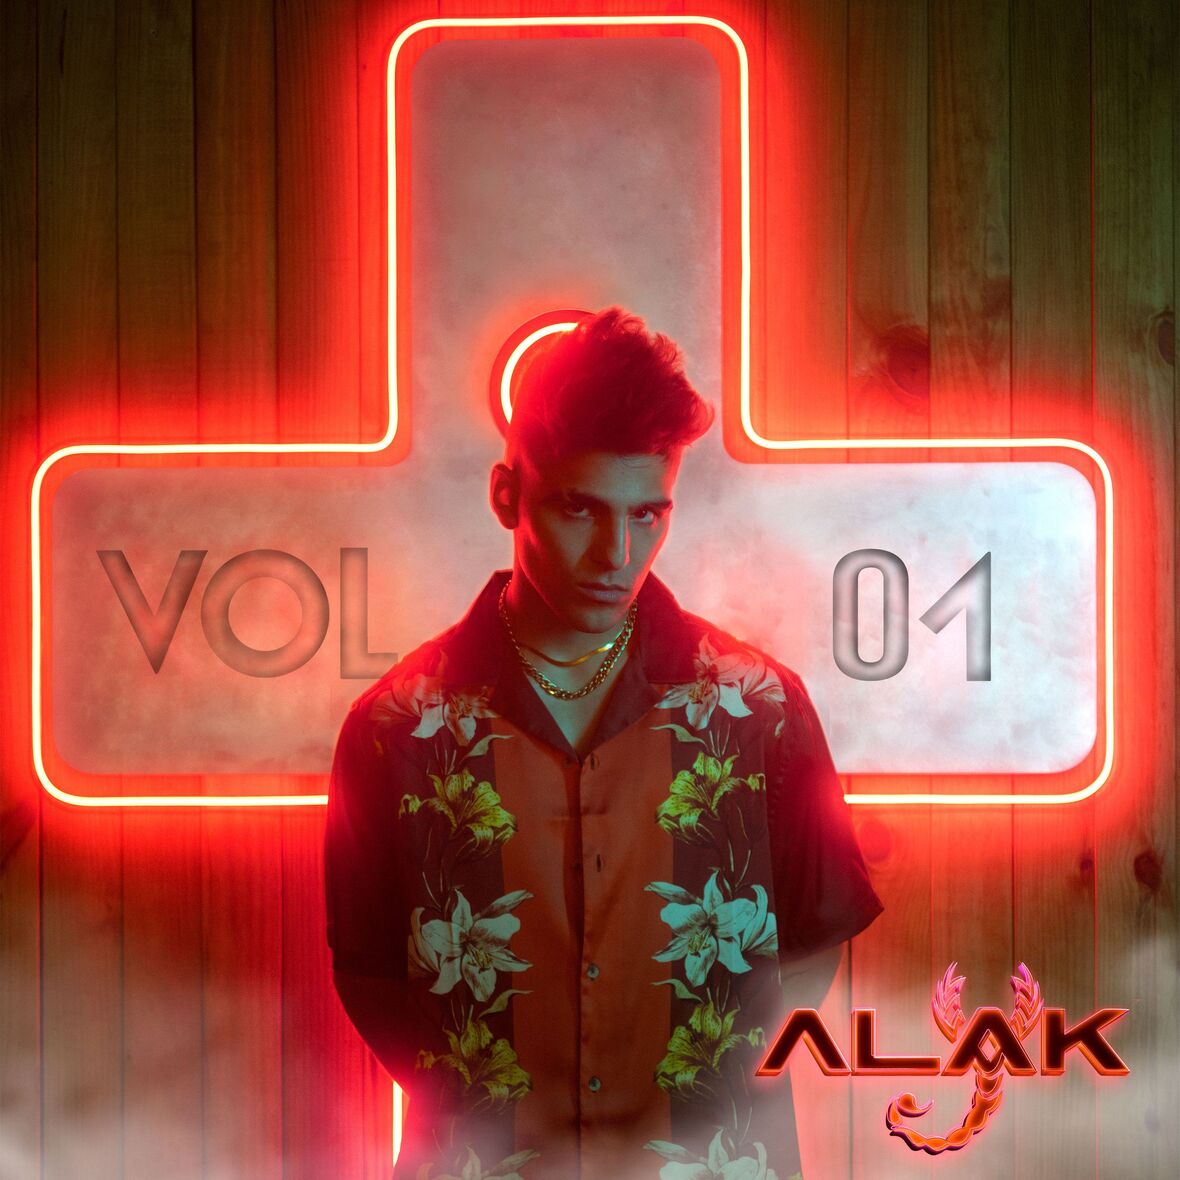 ALAK lanza nuevo álbum debut “Vol. 01”